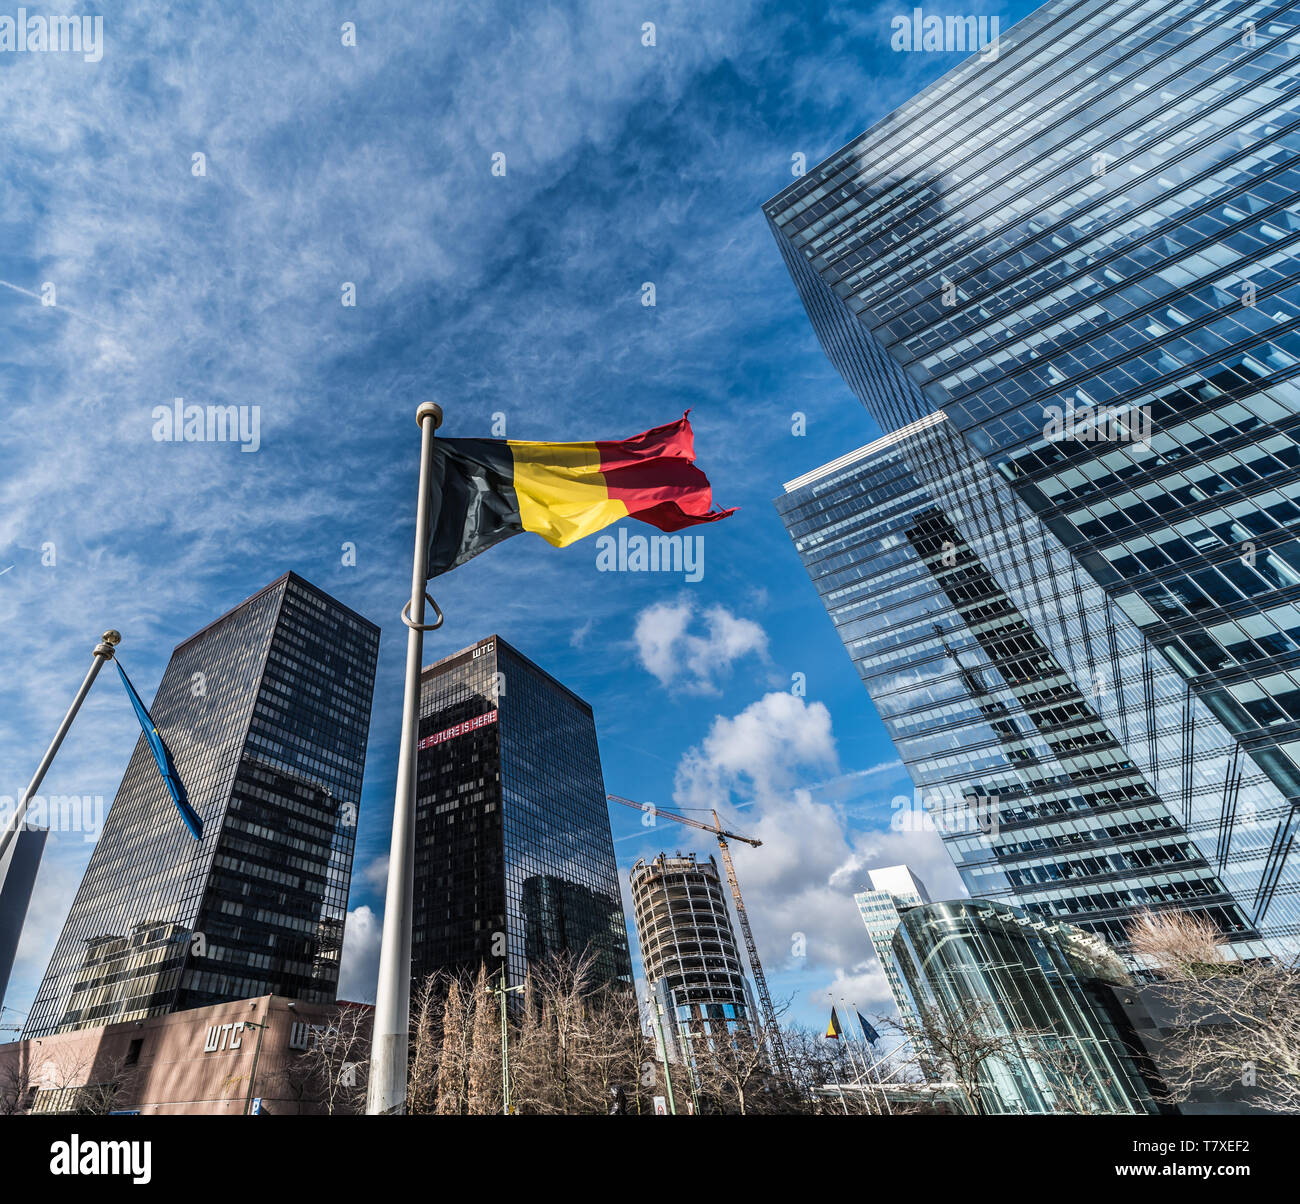 Bruxelles, Belgio - 03 10 2019: Contemporanea in vetro e acciaio grattacieli del poco Manhattan quartiere finanziario e commerciale con una bandiera belga Foto Stock